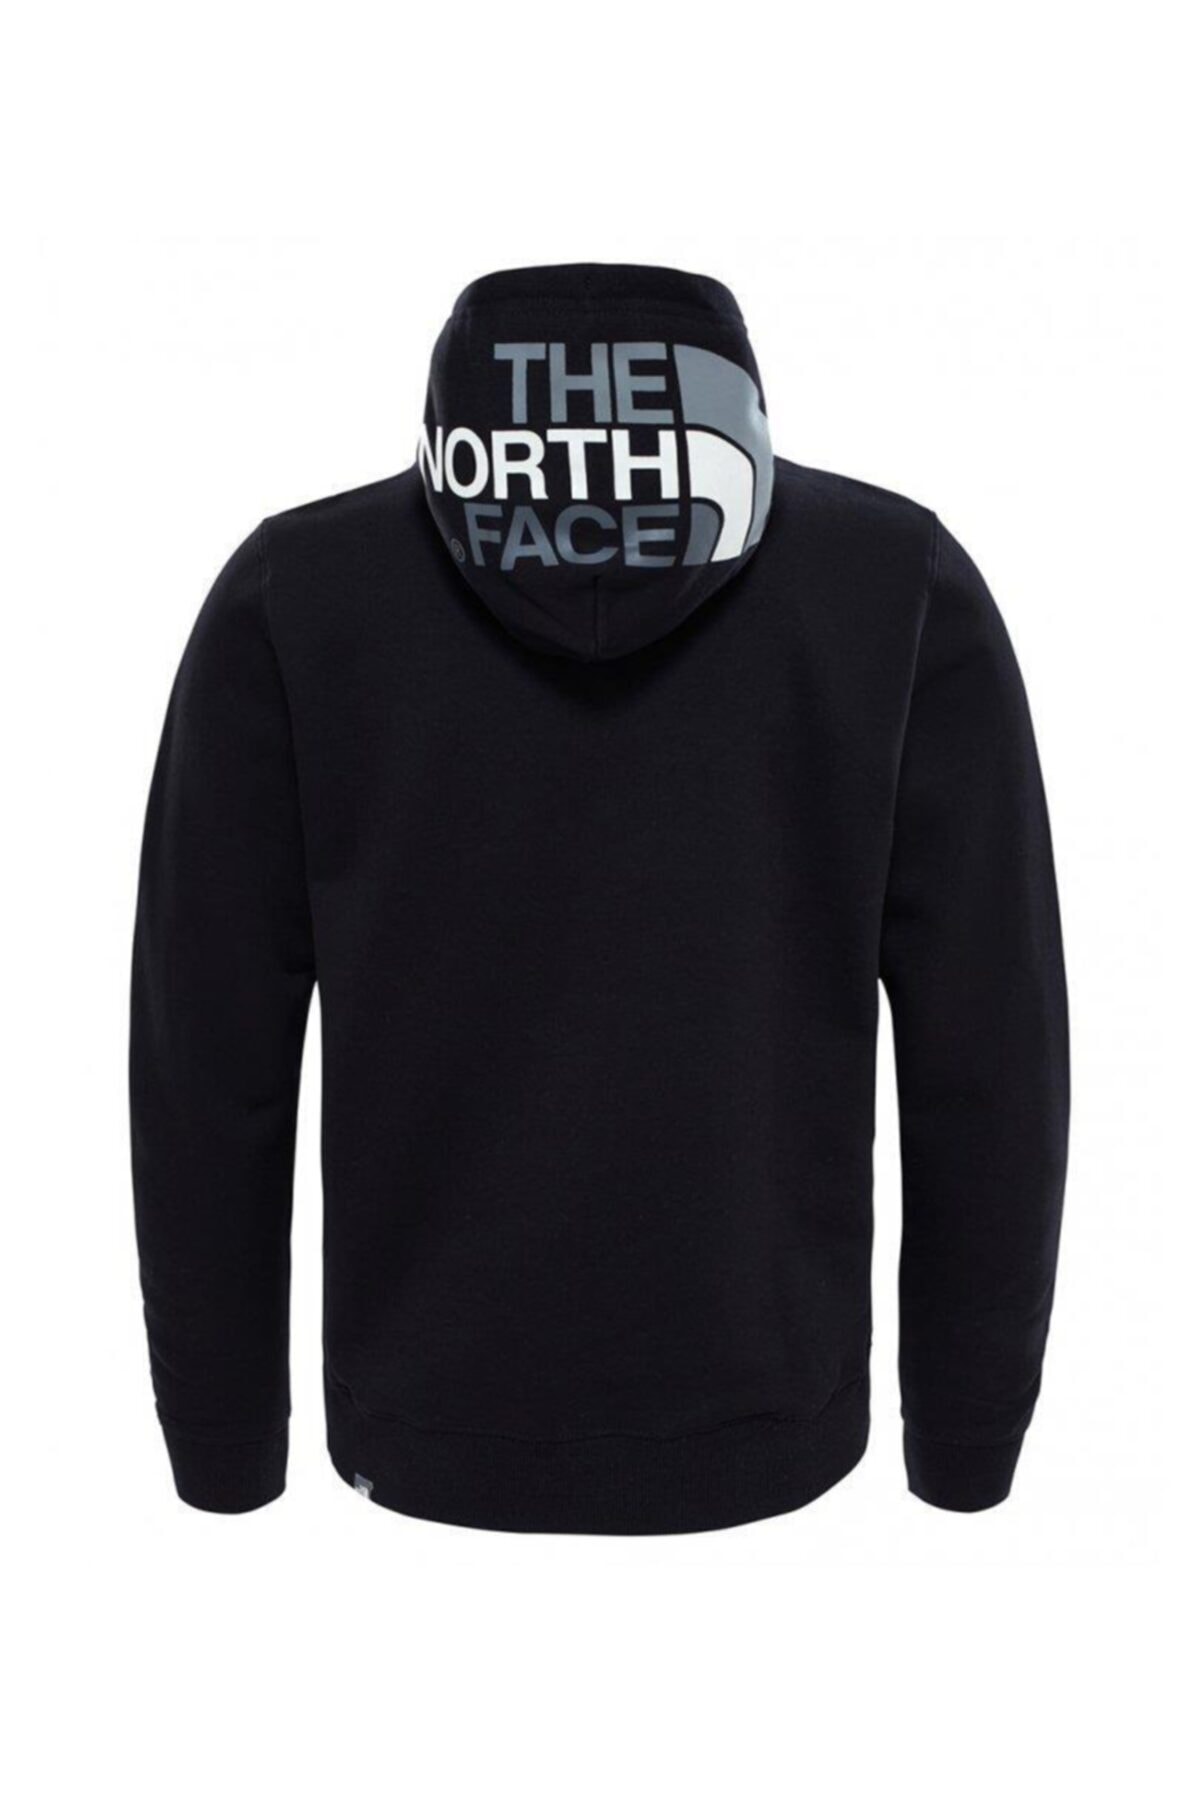 THE NORTH FACE Seas Drew Peak Hoodie Erkek Sweatshirt - T92TUVKX7 BY8776